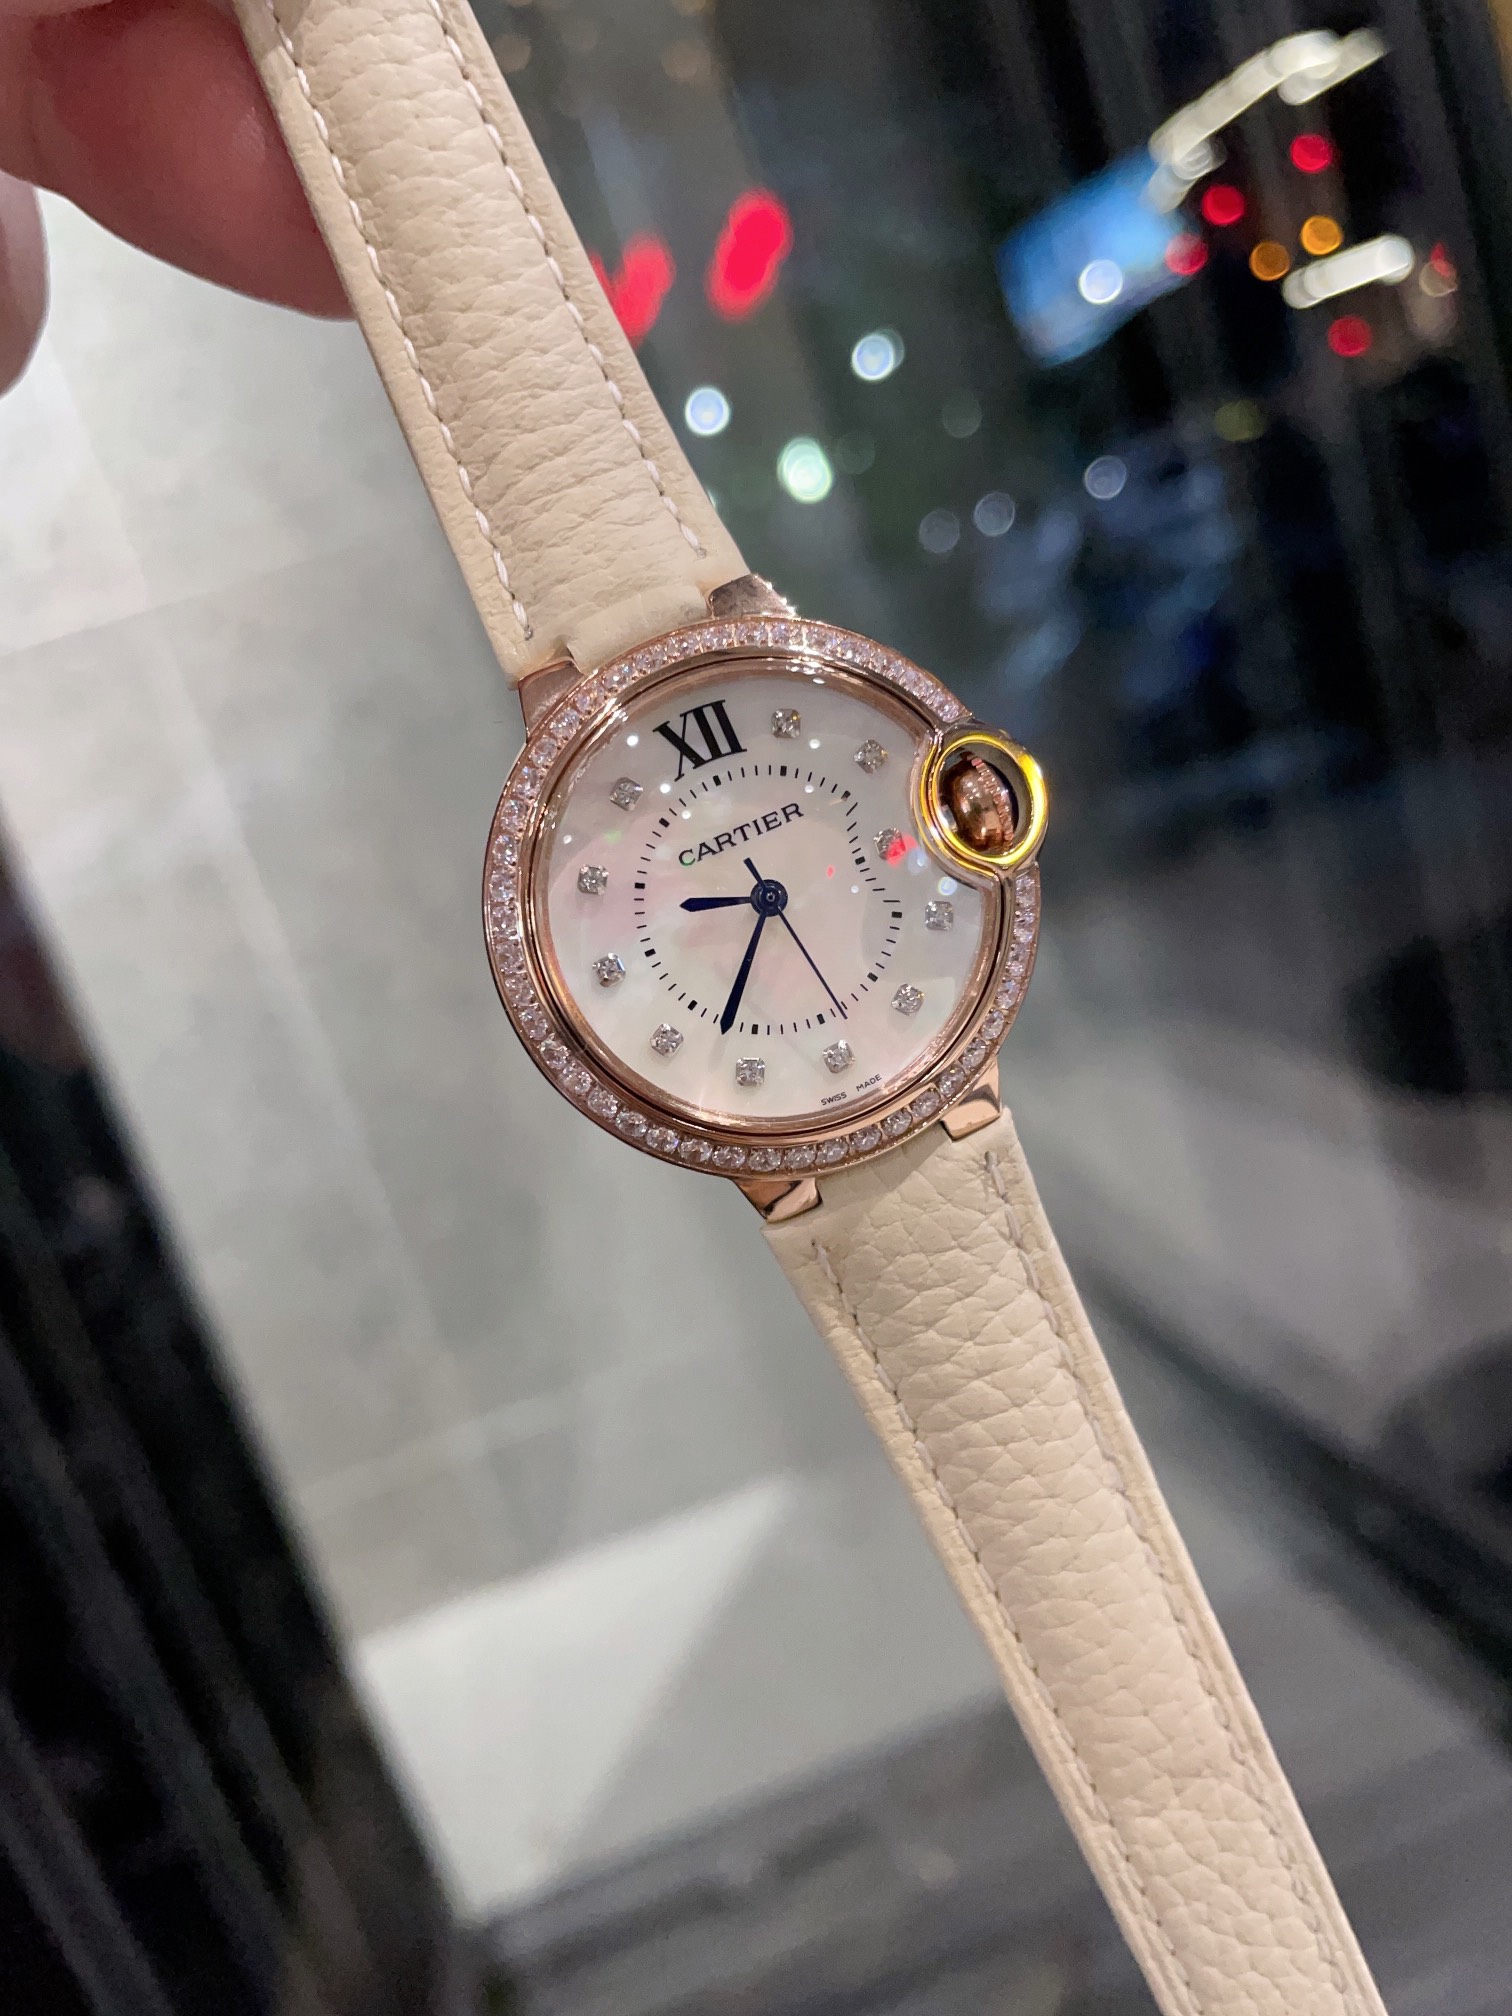 CARTIERカルティエ 腕時計 ムーブメントスーパーコピー フランス 薄い レ 腕時計 スチールバンド レザー ホワイト_2